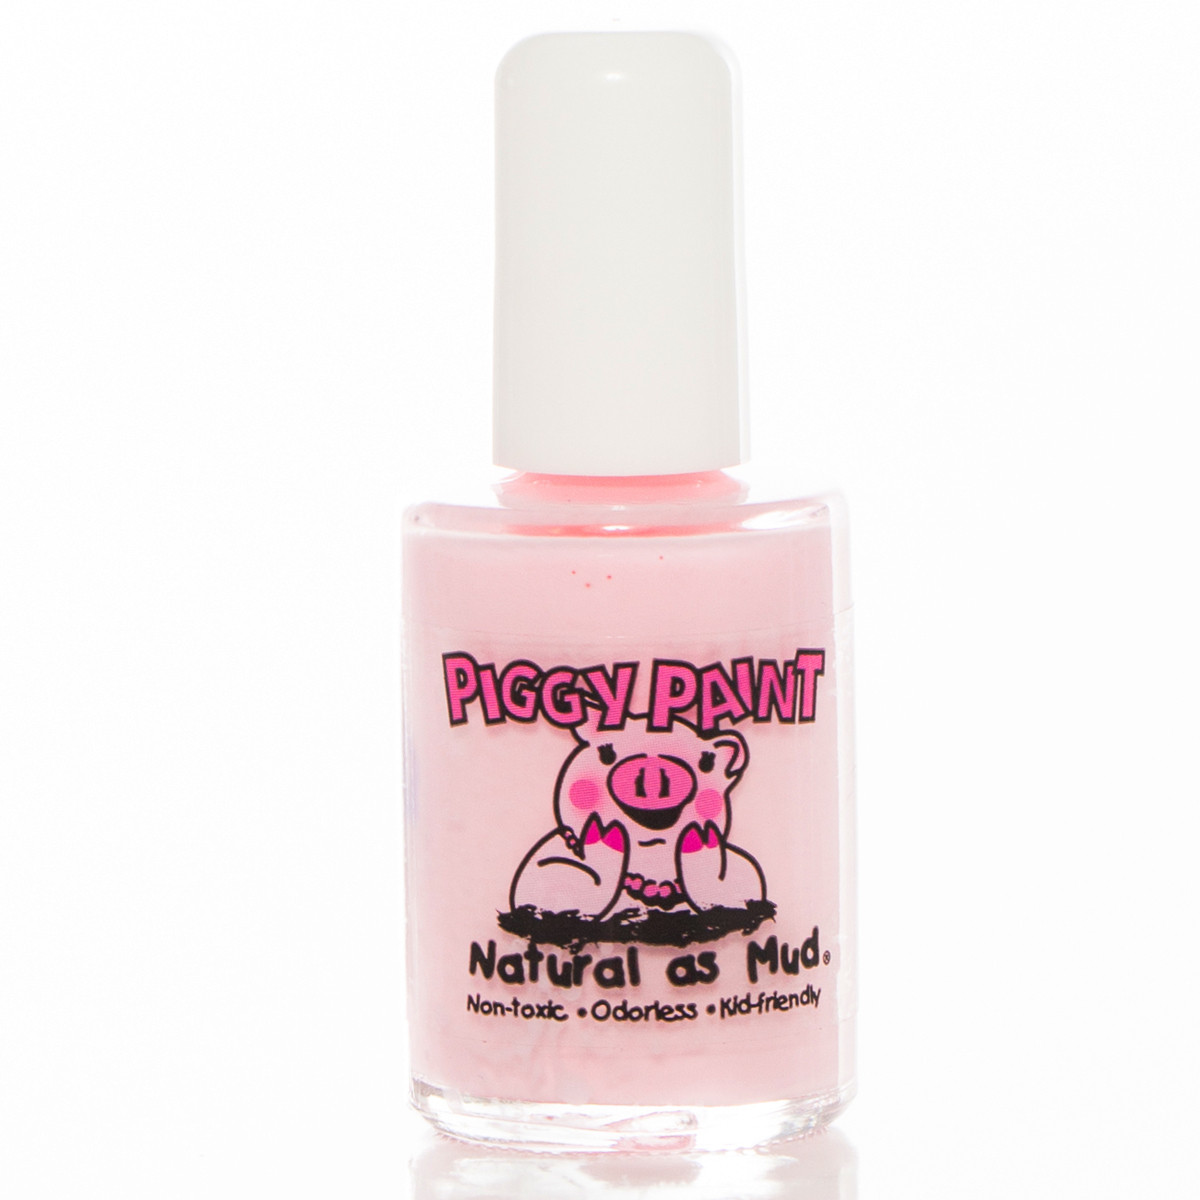 Piggy Paint Nail Polish, Muddles the Pig - Parents' Favorite